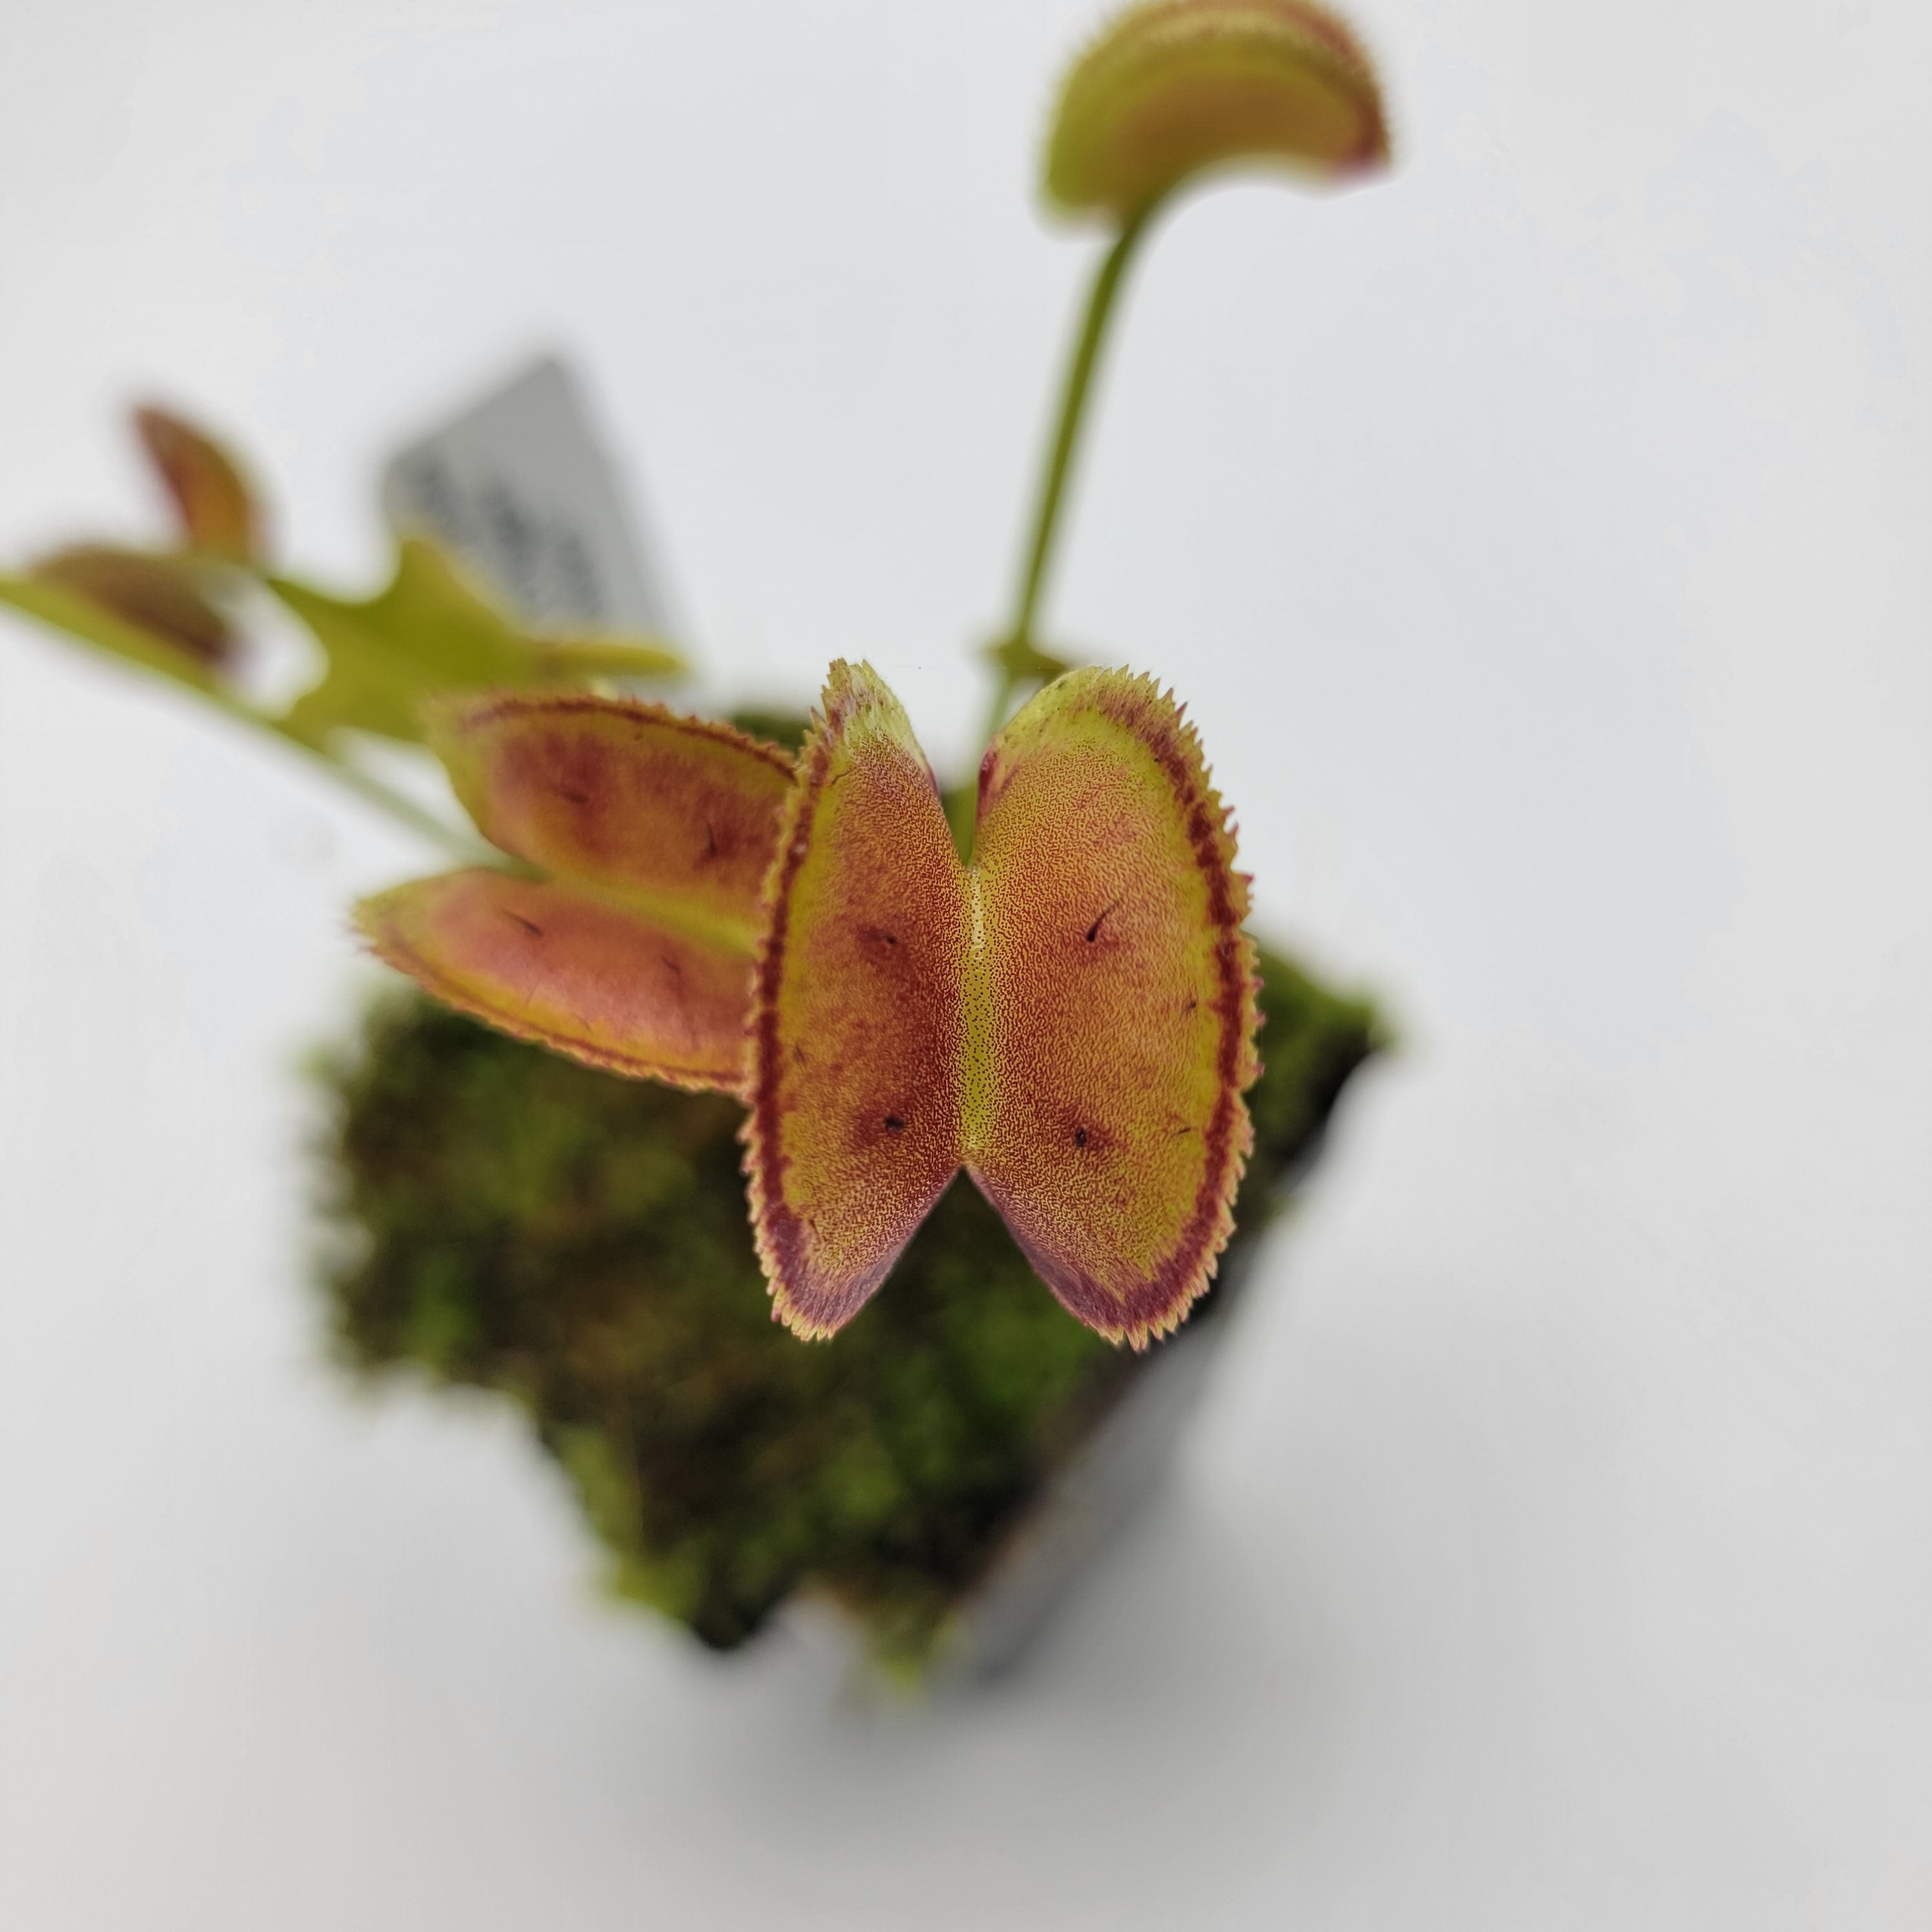 Venus flytrap (Dionaea muscipula) "FTS Trigger Happy" - Rainbow Carnivorous Plants LLC